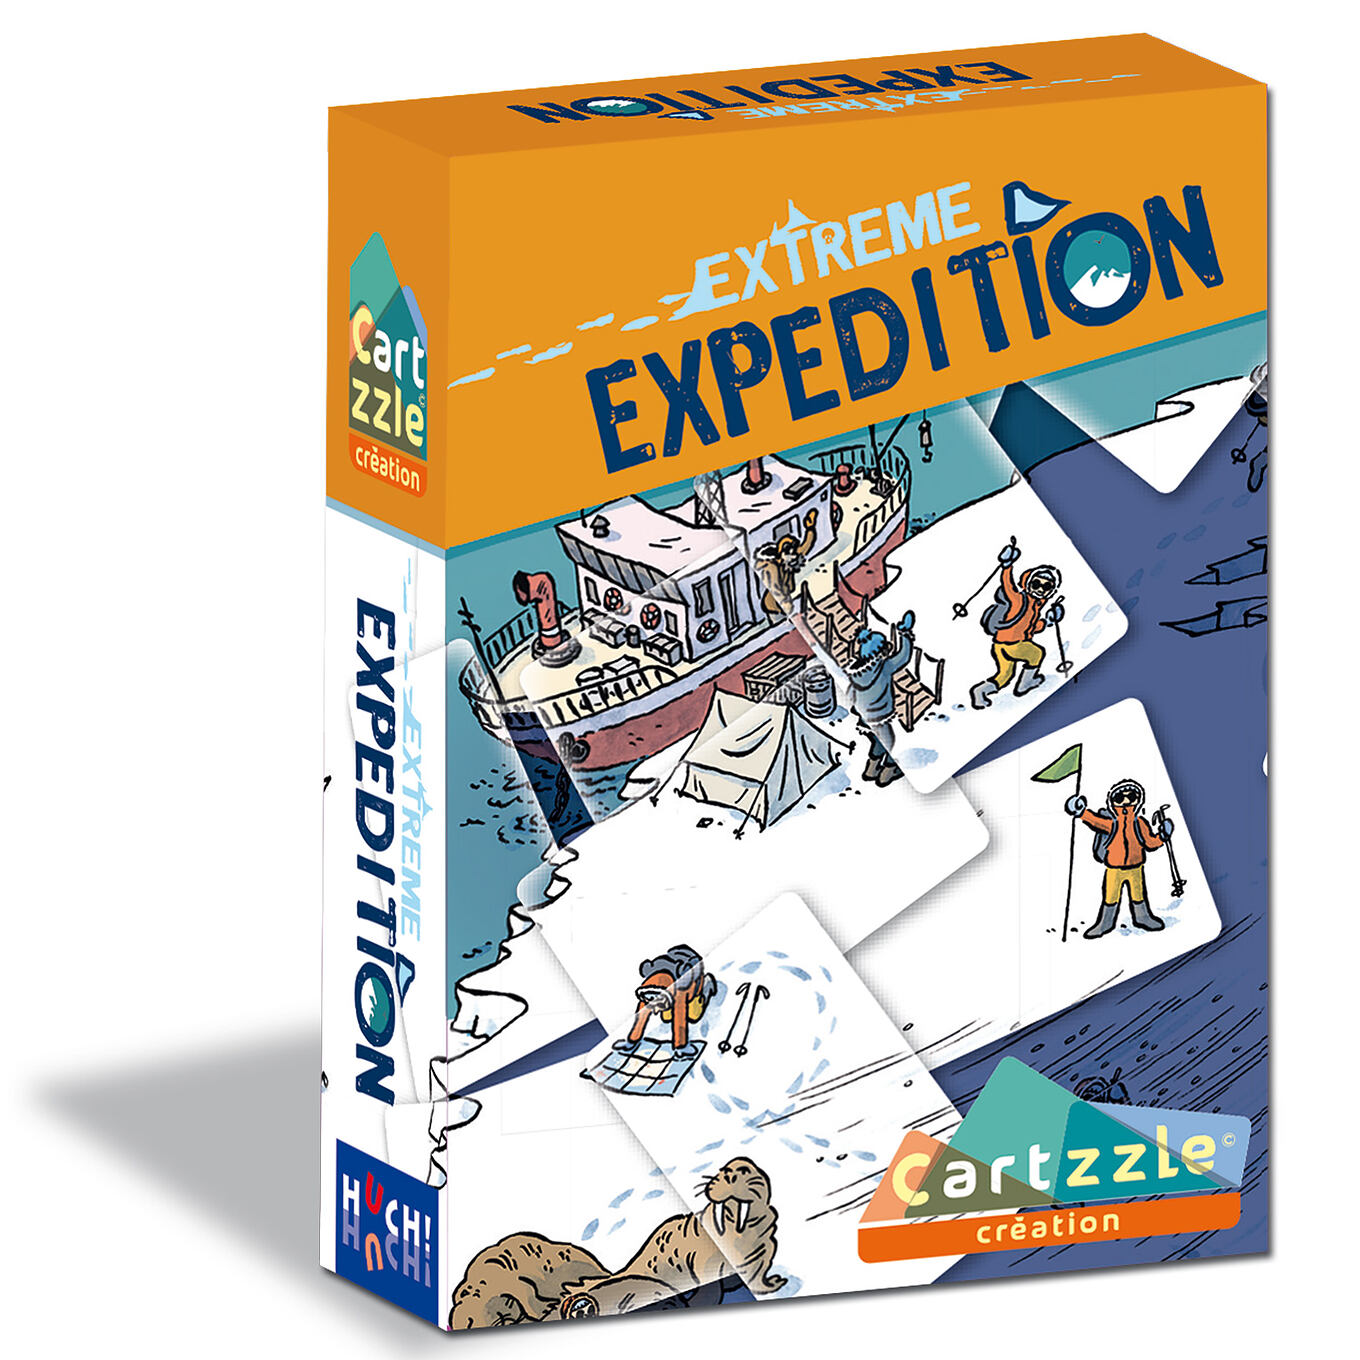 Cartzzle-Extreme-Expedition-von-huch-4260071882721-vorl_Box_1500x1500